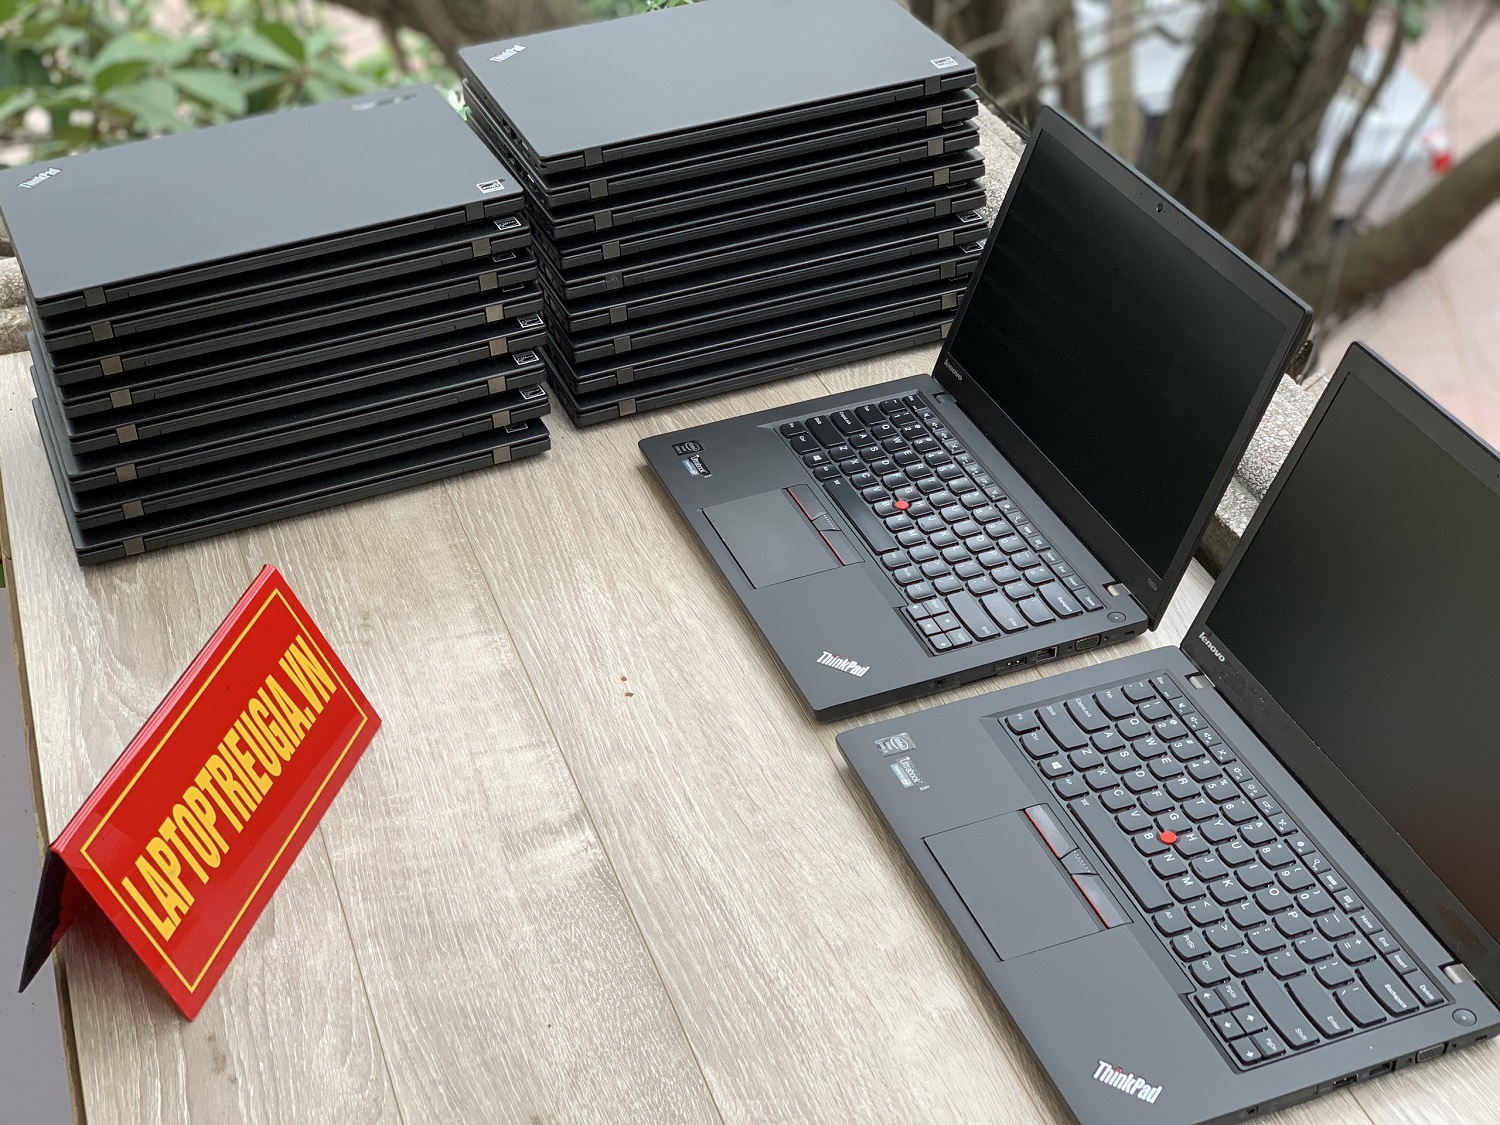 Lenovo Thinkpad T450s : i5-5300U | 4Gb | SSD 128Gb | 14.0 HD+  Máy đẹp likenew